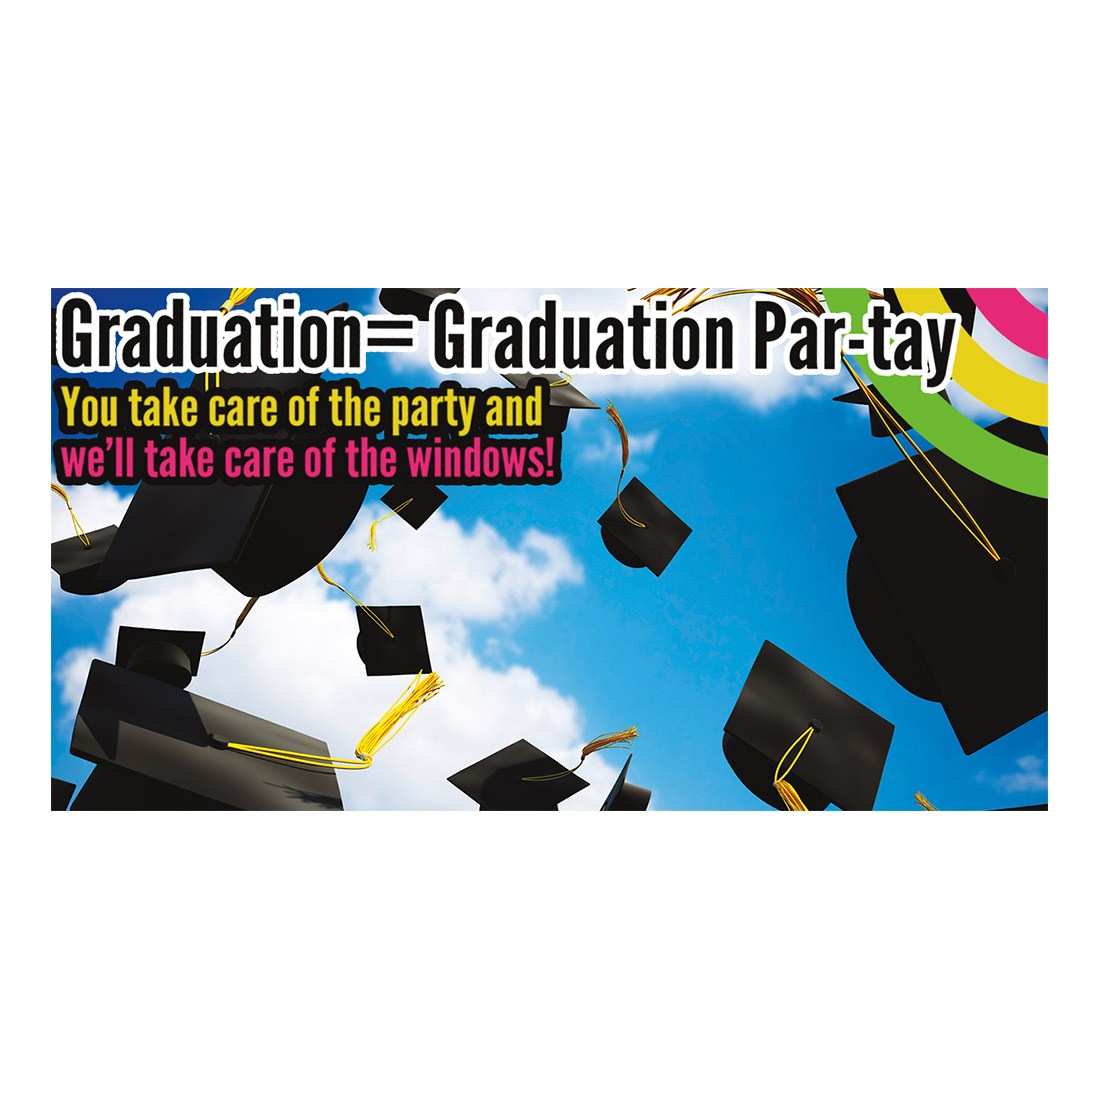 Graduation Party Facebook Ad